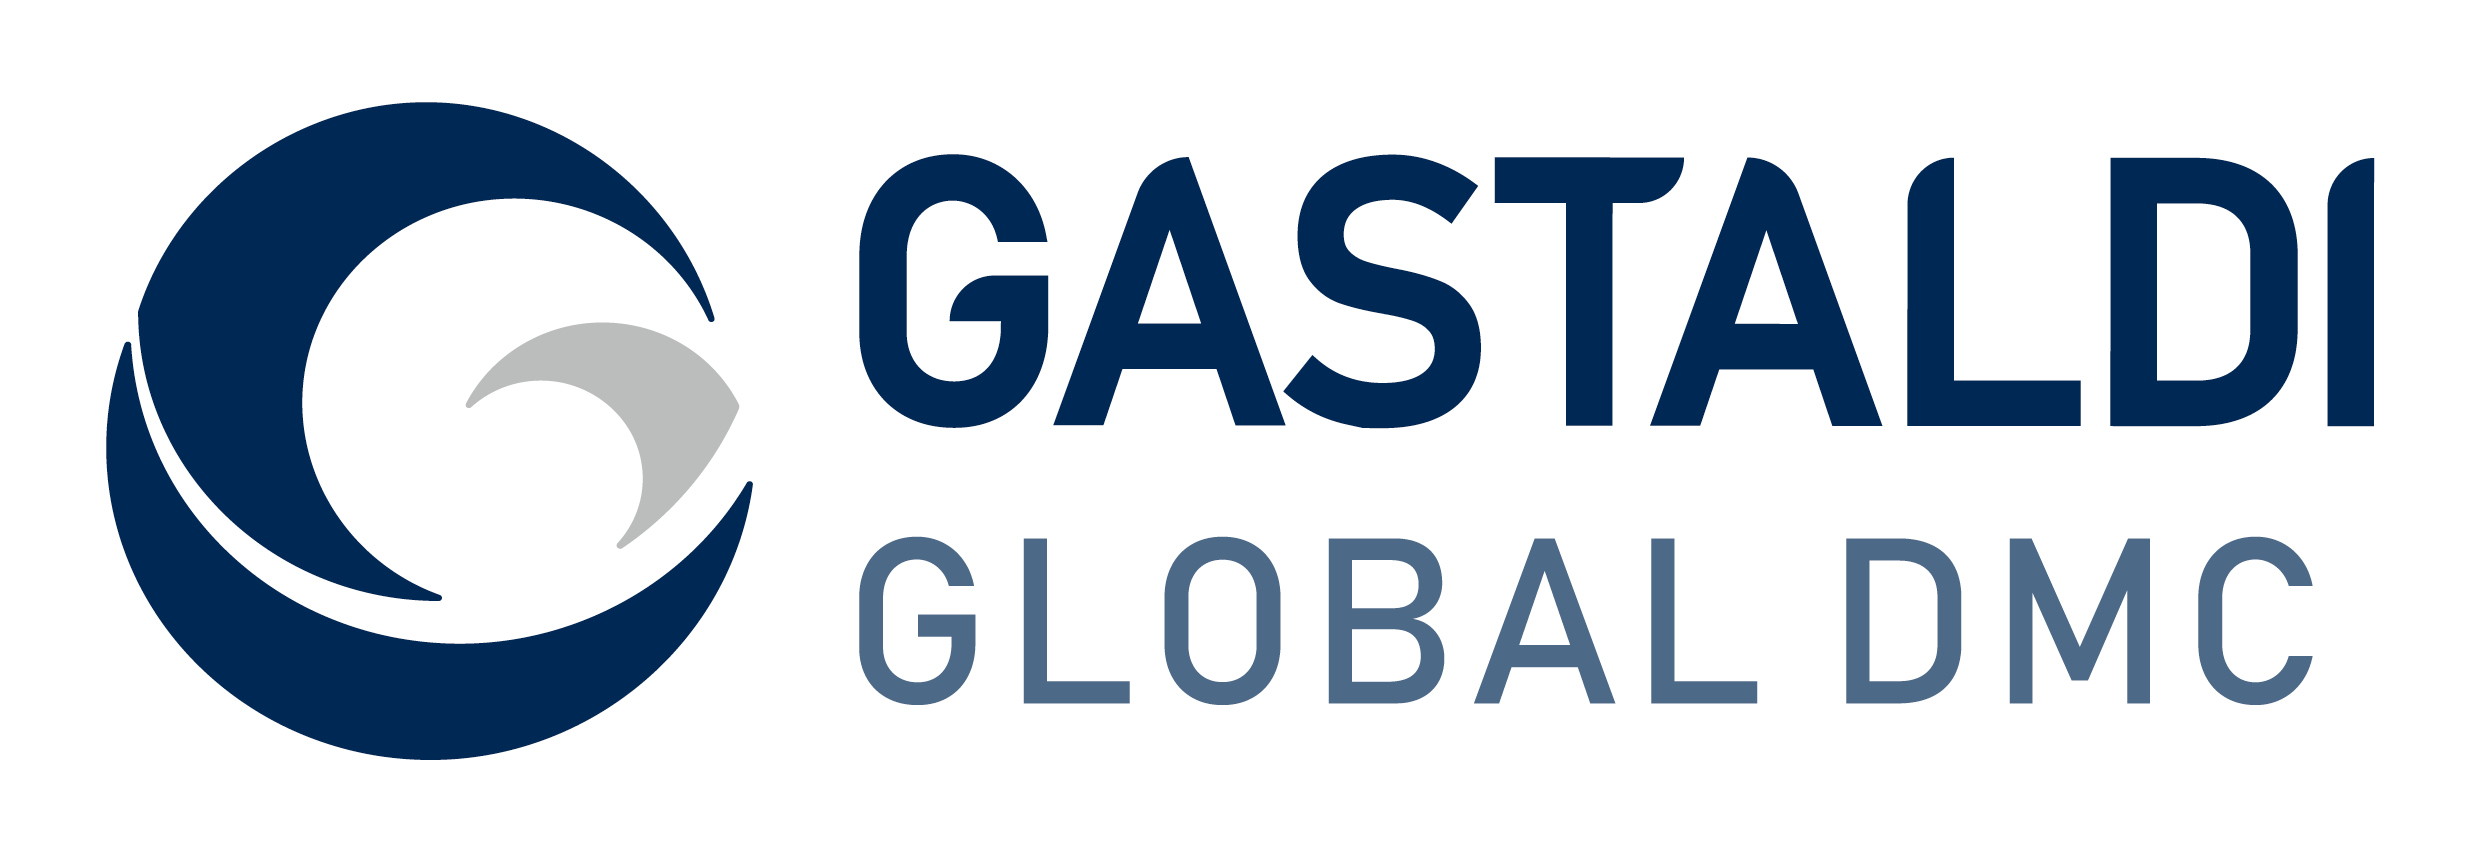 Gastaldi Global DMC Logo 300 RGB